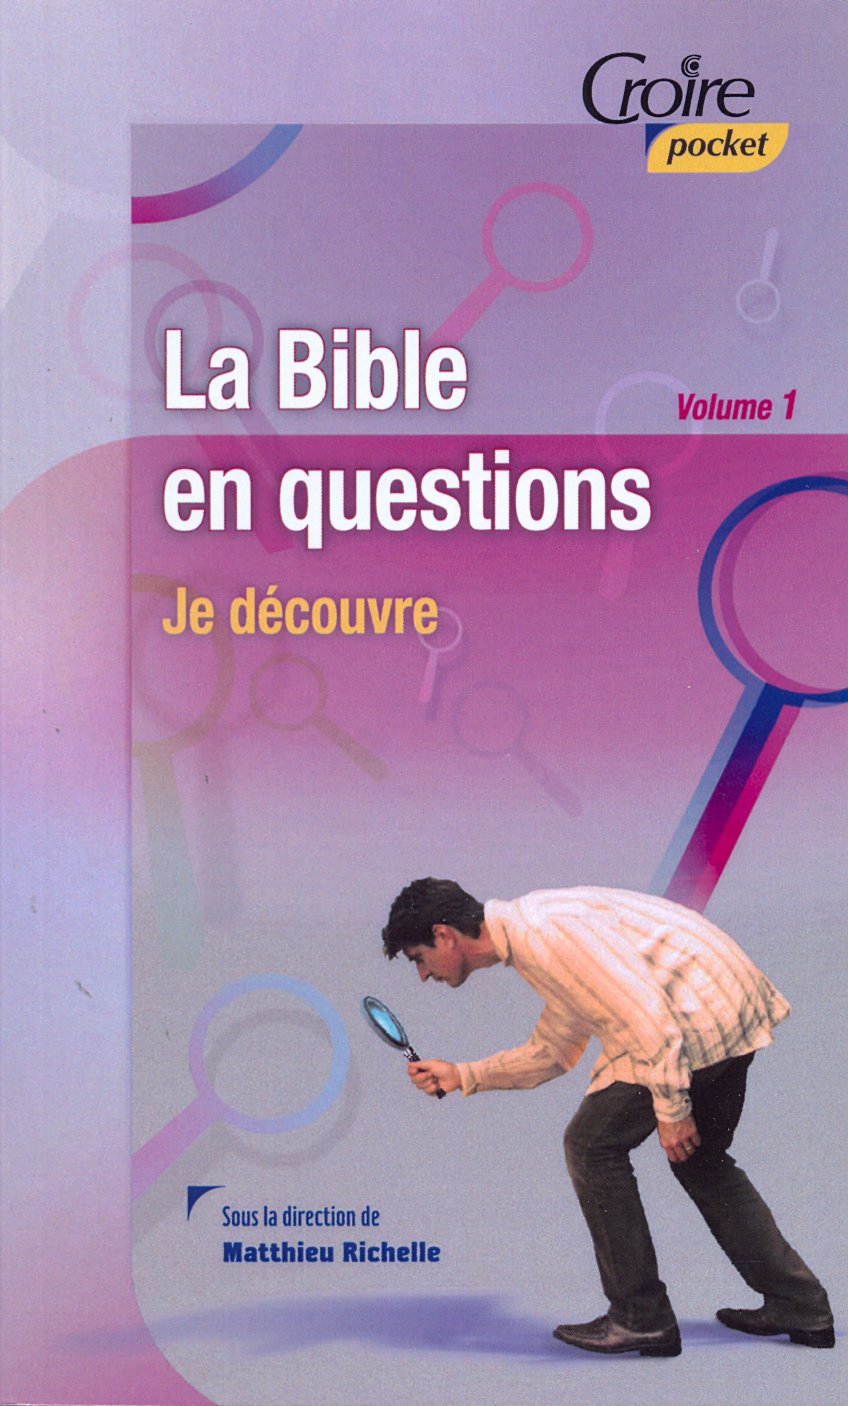 Bible en questions (La) - Volume 1 - Je découvre